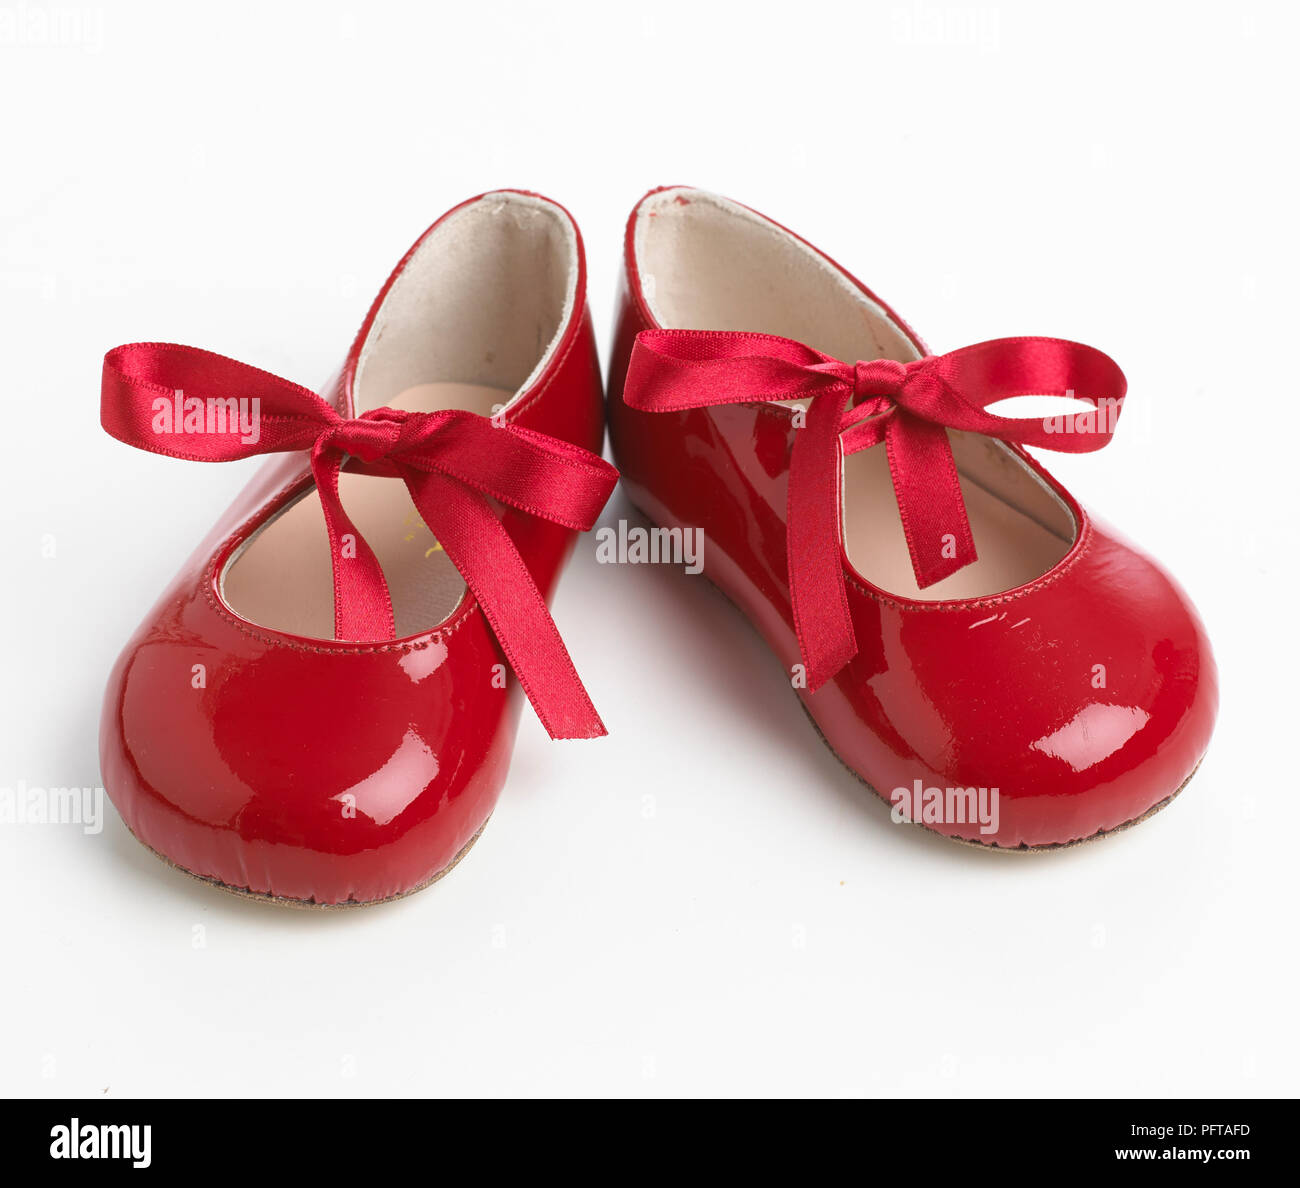 Patente de amarre cinta zapatos rojos Foto de stock